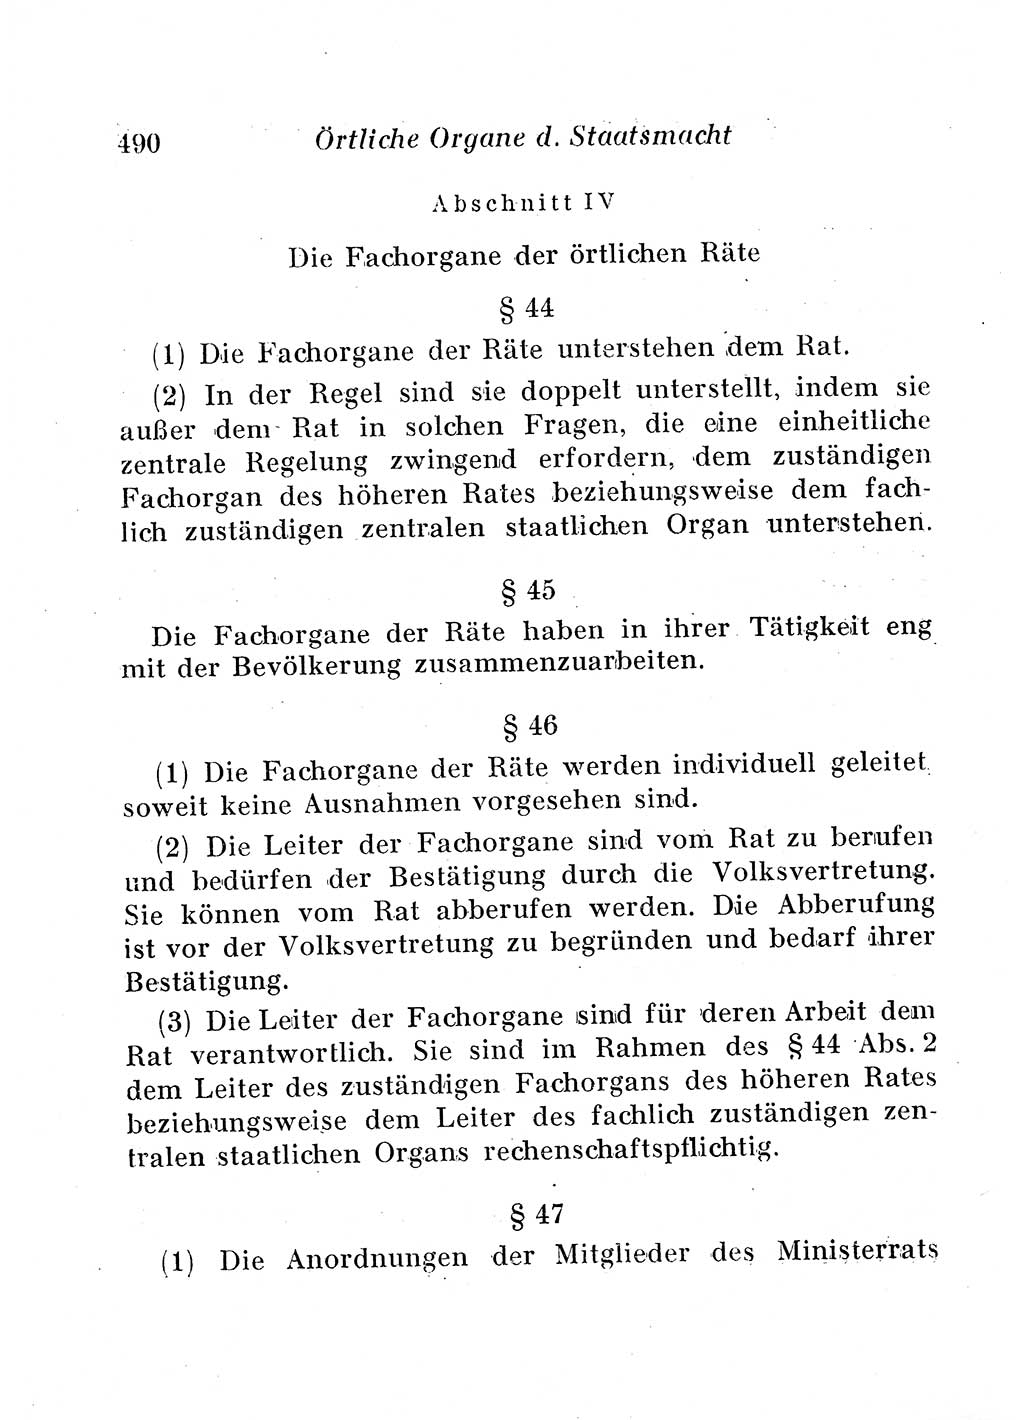 Staats- und verwaltungsrechtliche Gesetze der Deutschen Demokratischen Republik (DDR) 1958, Seite 490 (StVerwR Ges. DDR 1958, S. 490)